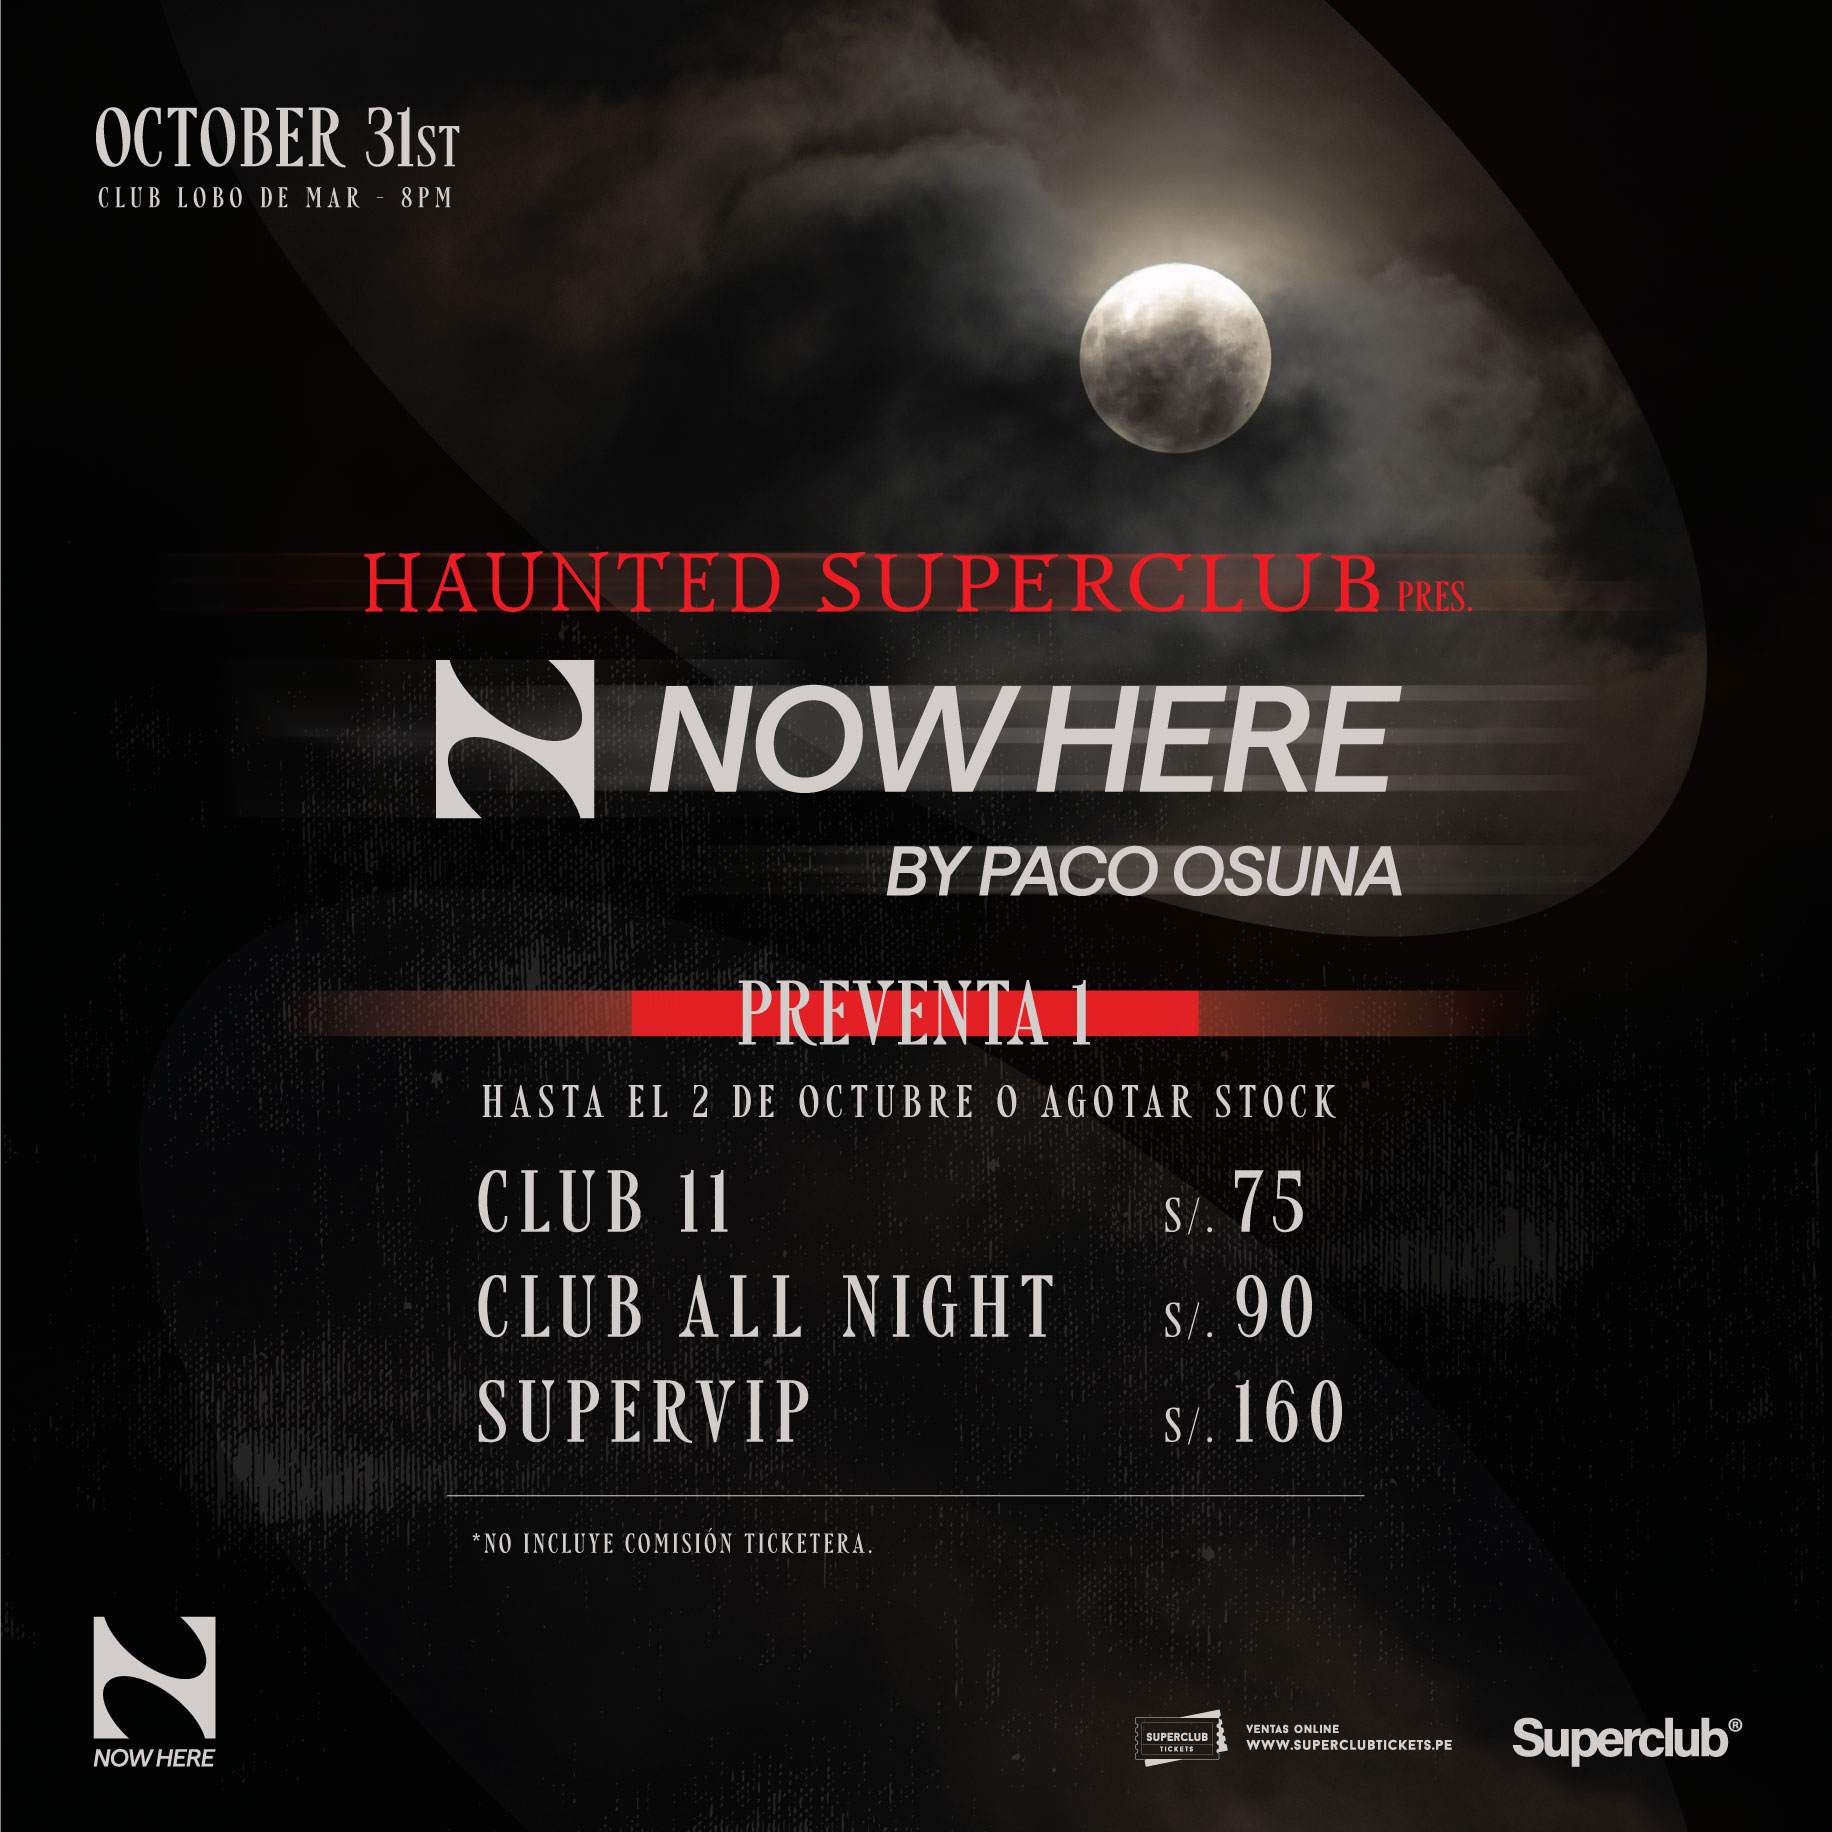 Haunted Superclub pres. NOWHERE - Página trasera